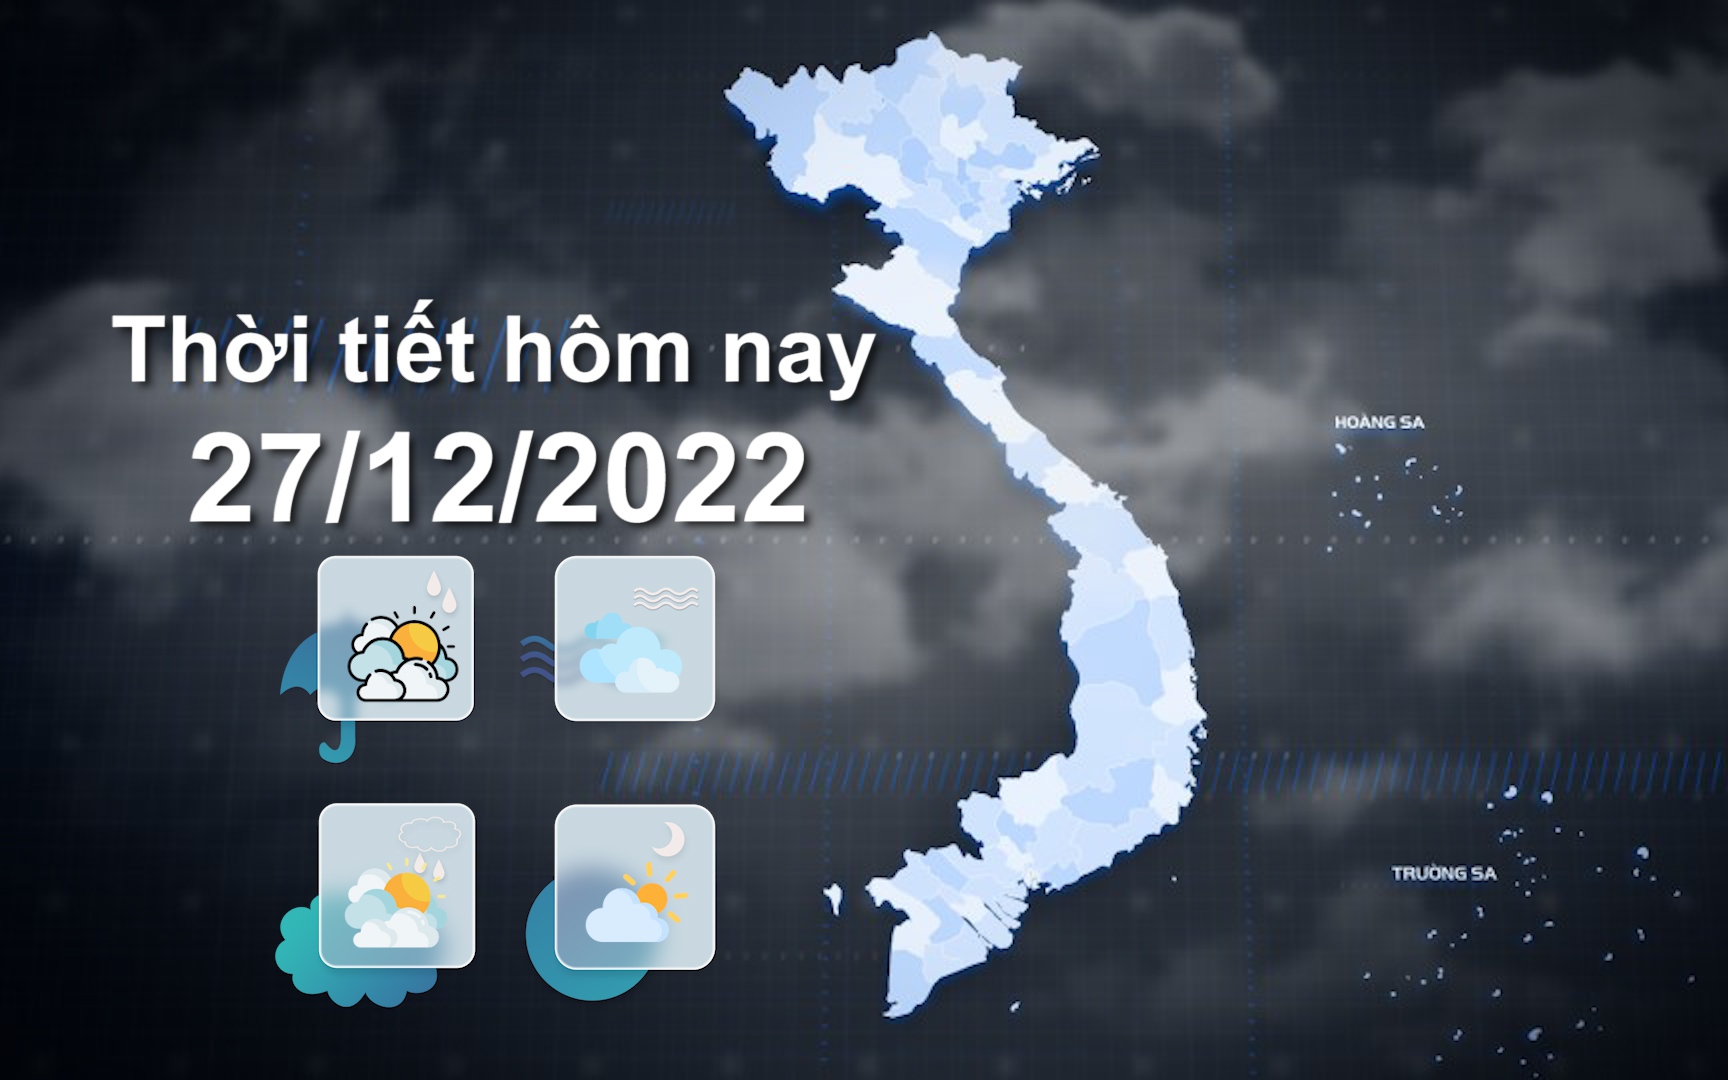 Thời tiết hôm nay 27/12/2022: Hà Nội có mưa vài nơi, trời rét